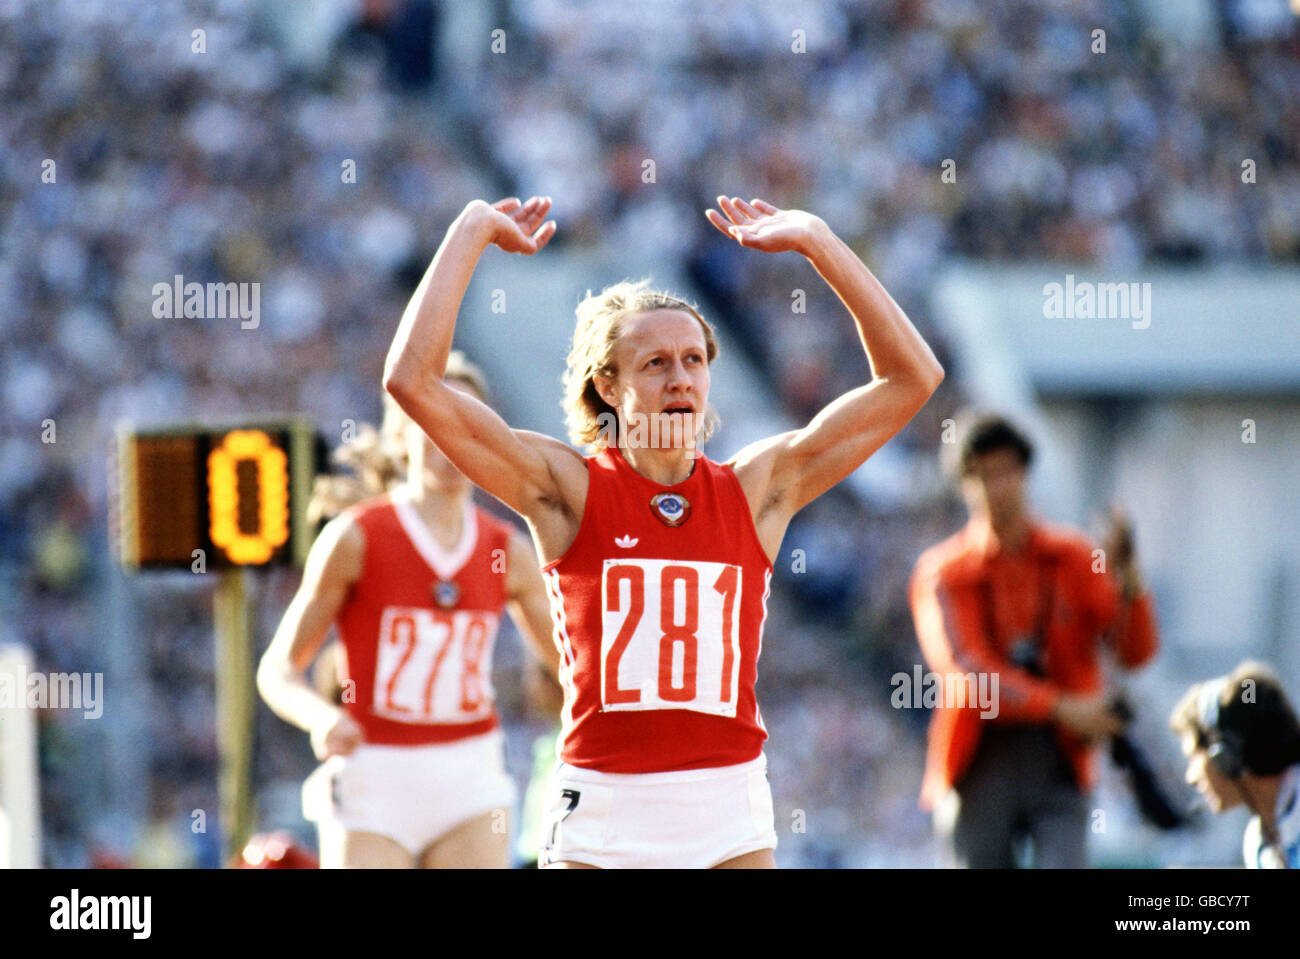 Athlétisme - Jeux Olympiques de Moscou 1980 - finale du 800m féminin.Nadyezda Olizarenko (281) célèbre la victoire de l'or dans un nouveau record du monde de 1min 53.43sec Banque D'Images